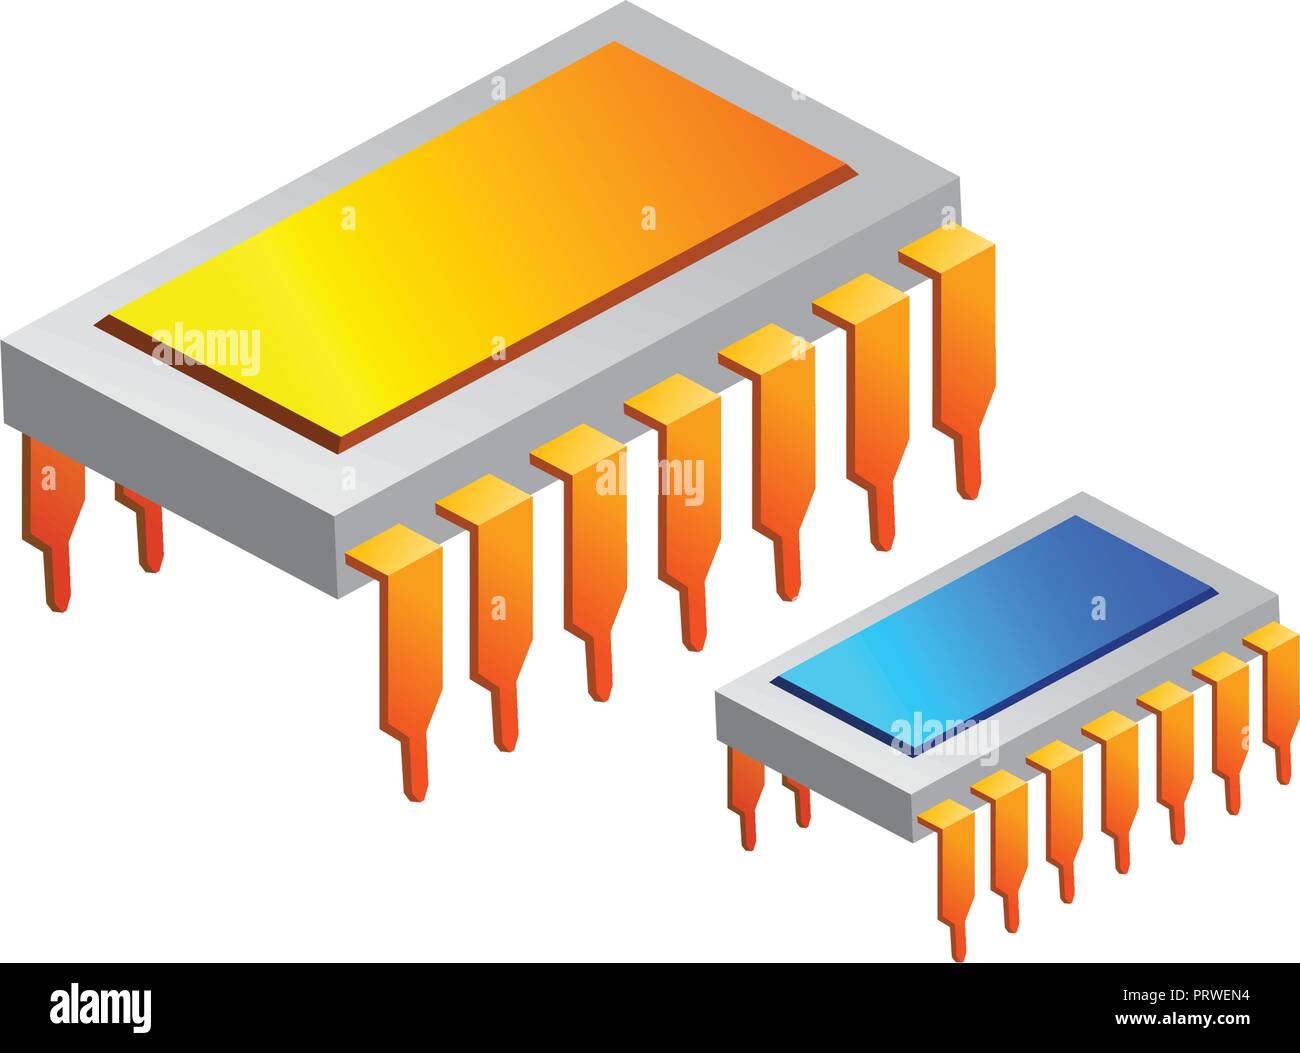 Ic chip elettronico. Illustrazione di vettore isolato su sfondo bianco Illustrazione Vettoriale